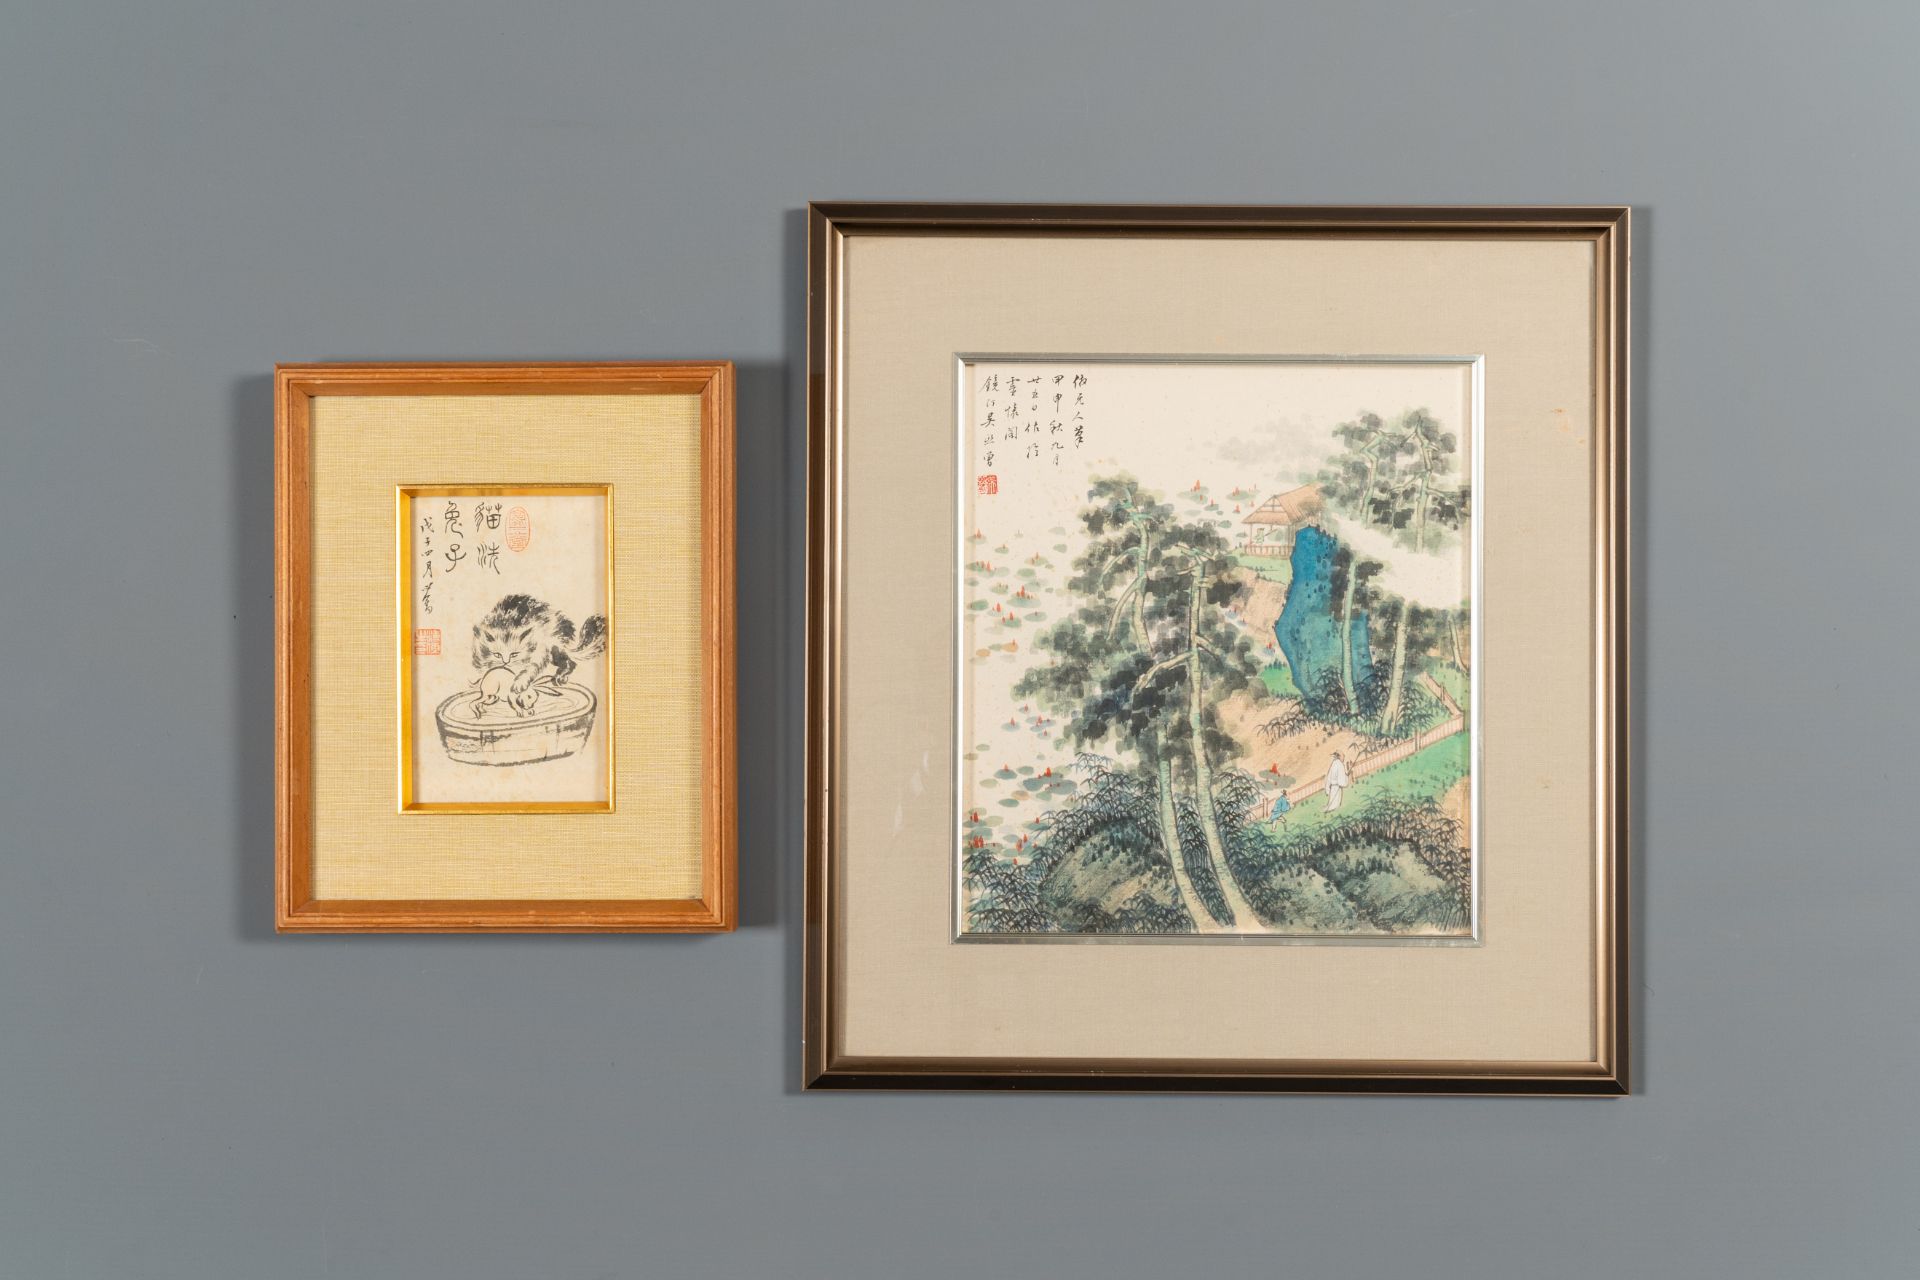 Pu Xinyu æº¥å¿ƒç•¬ (1896-1963): 'Cat and rabbit' and Wu Xizeng å³ç†™æ›¾ (1904-1972): 'Landscape', i